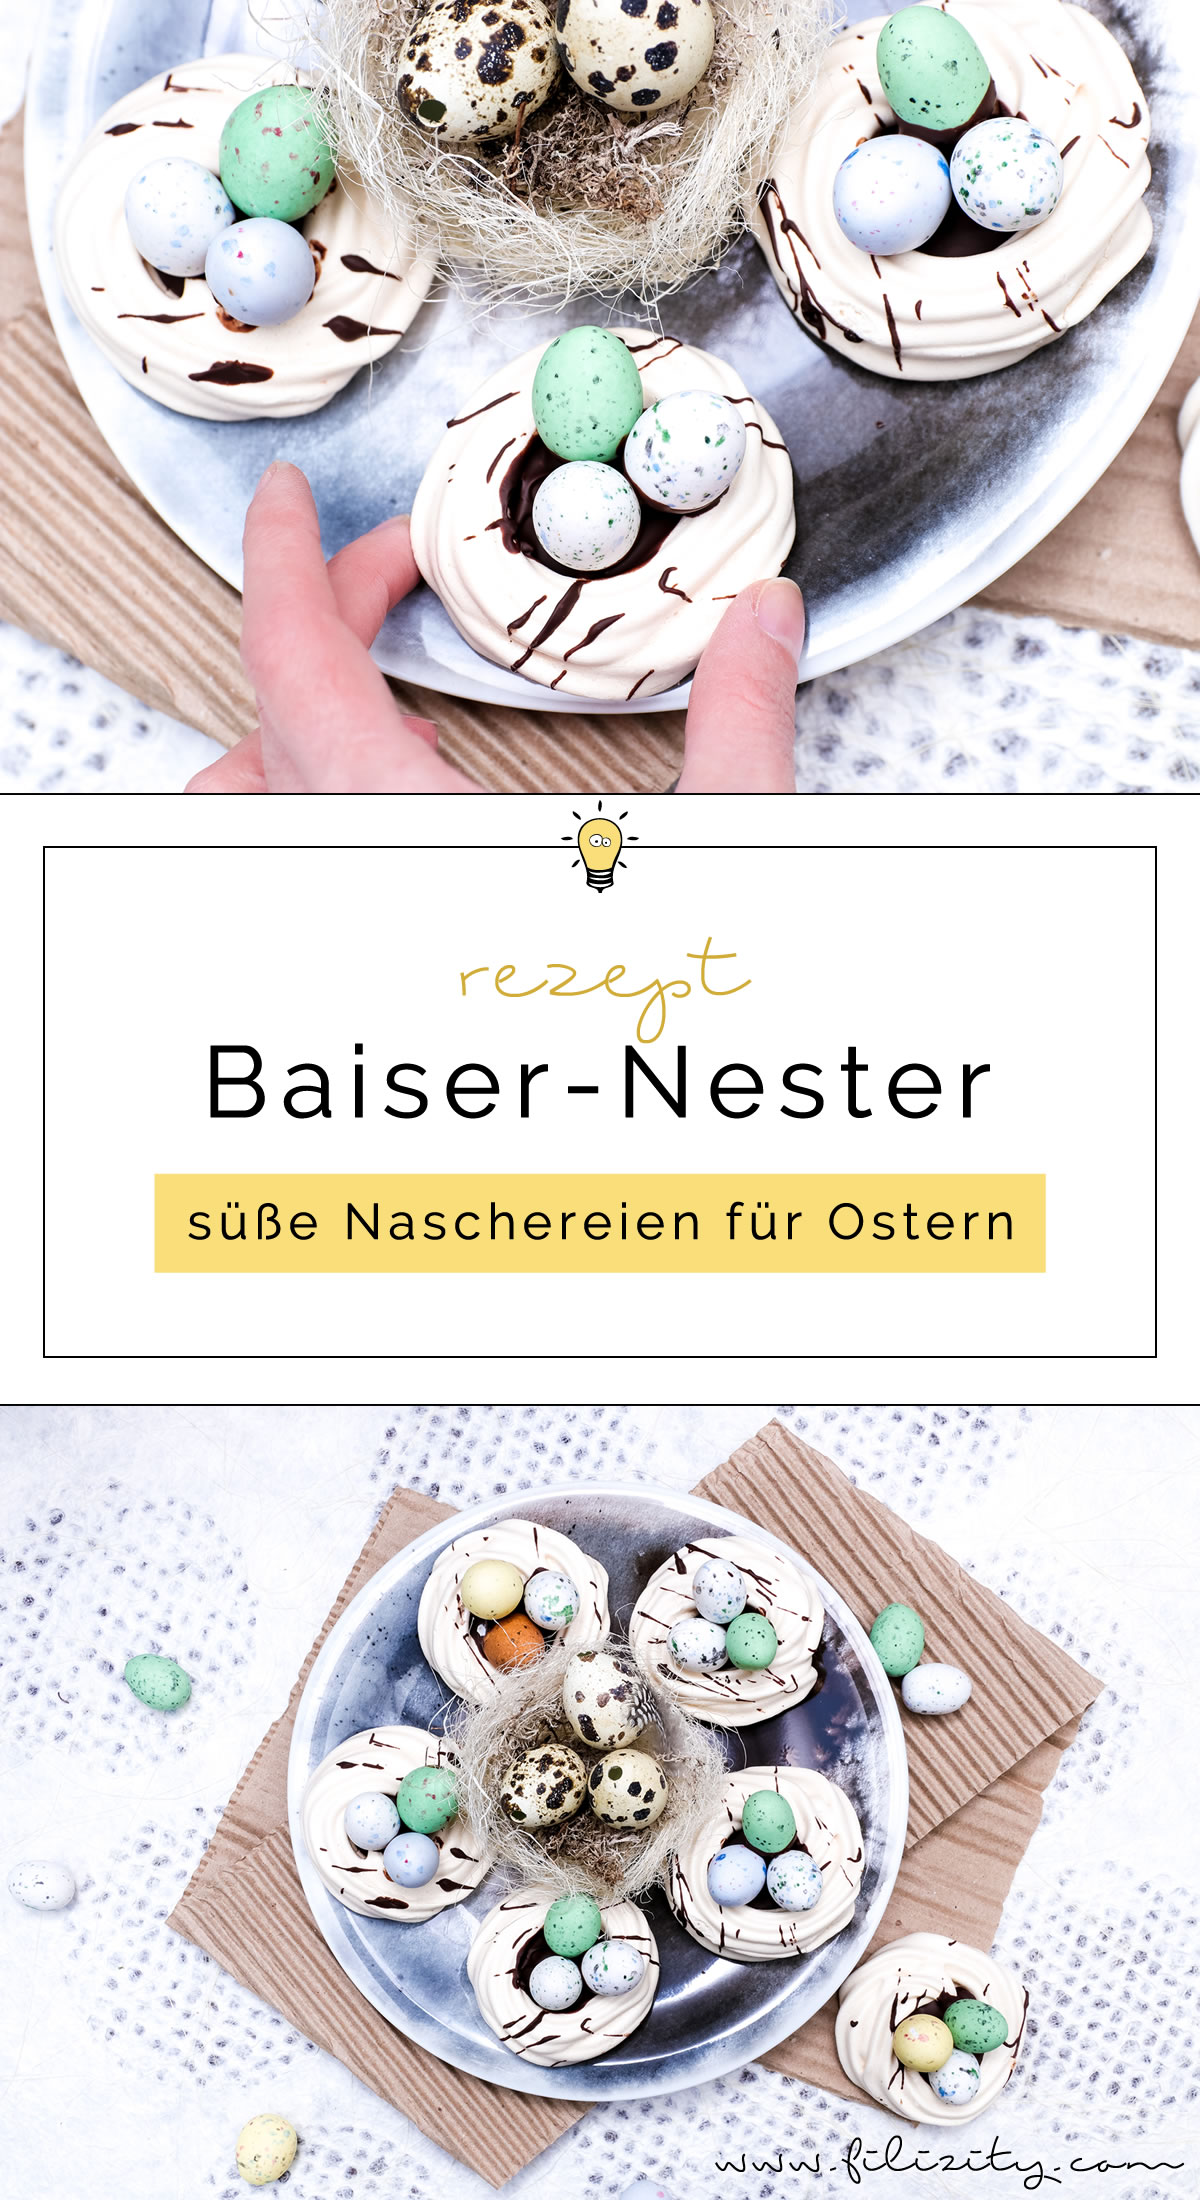 Rezept für Osternester aus Baiser (Meringue) backen | Rezept für himmlische Oster-Leckereien mit Schokolade | Filizity.com | Food-Blog aus dem Rheinland #ostern #osterrezept #baiser #meringue